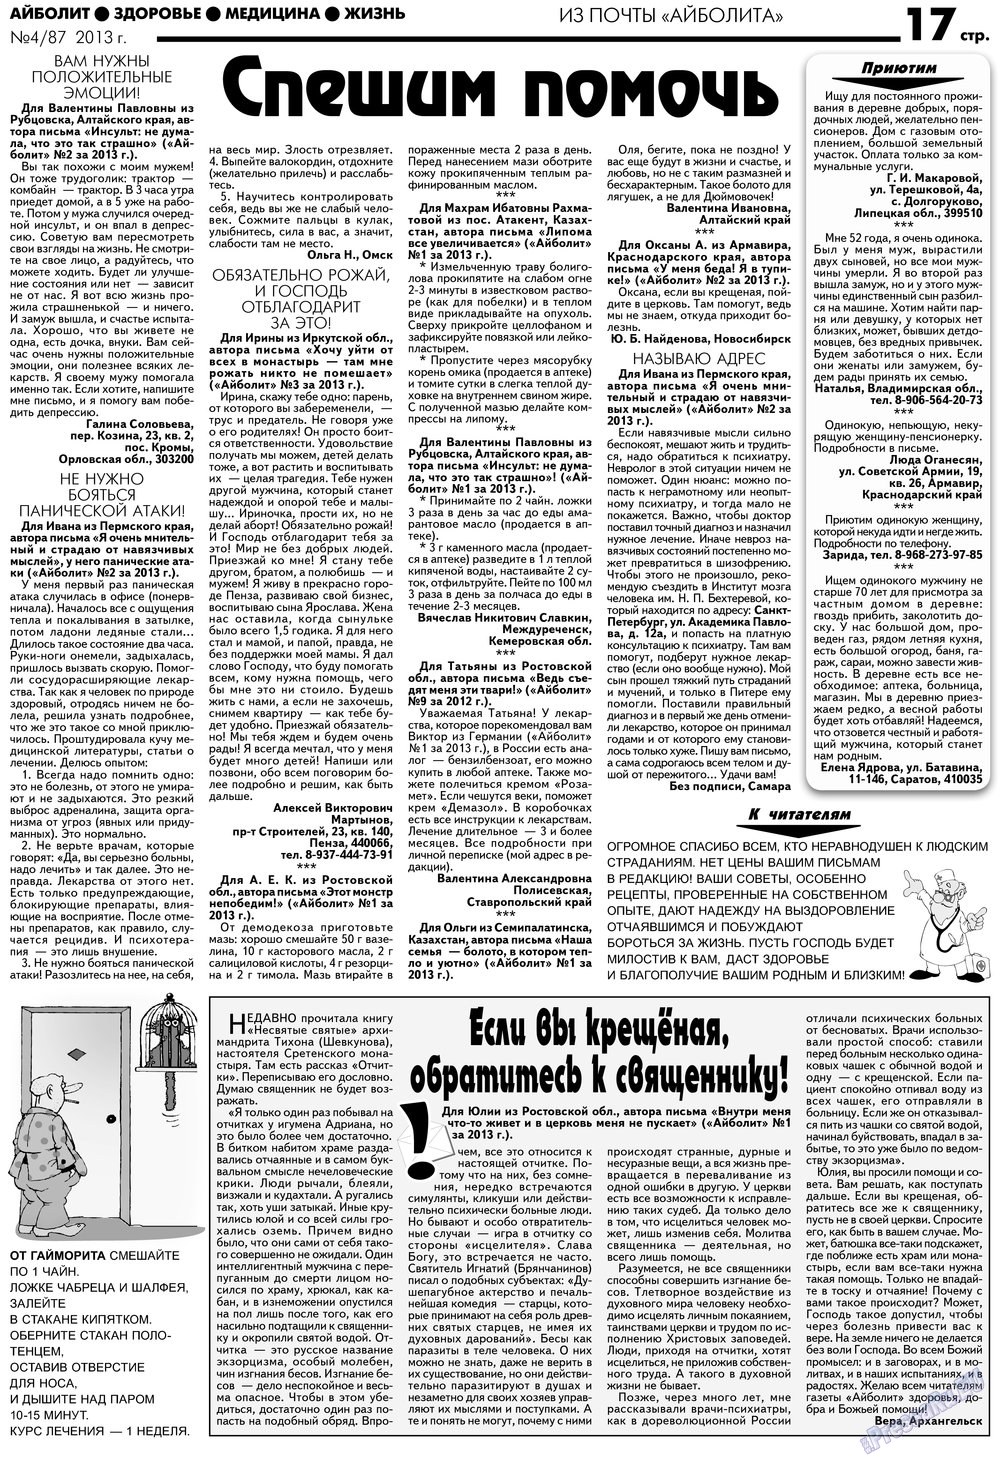 АйБолит, газета. 2013 №4 стр.17